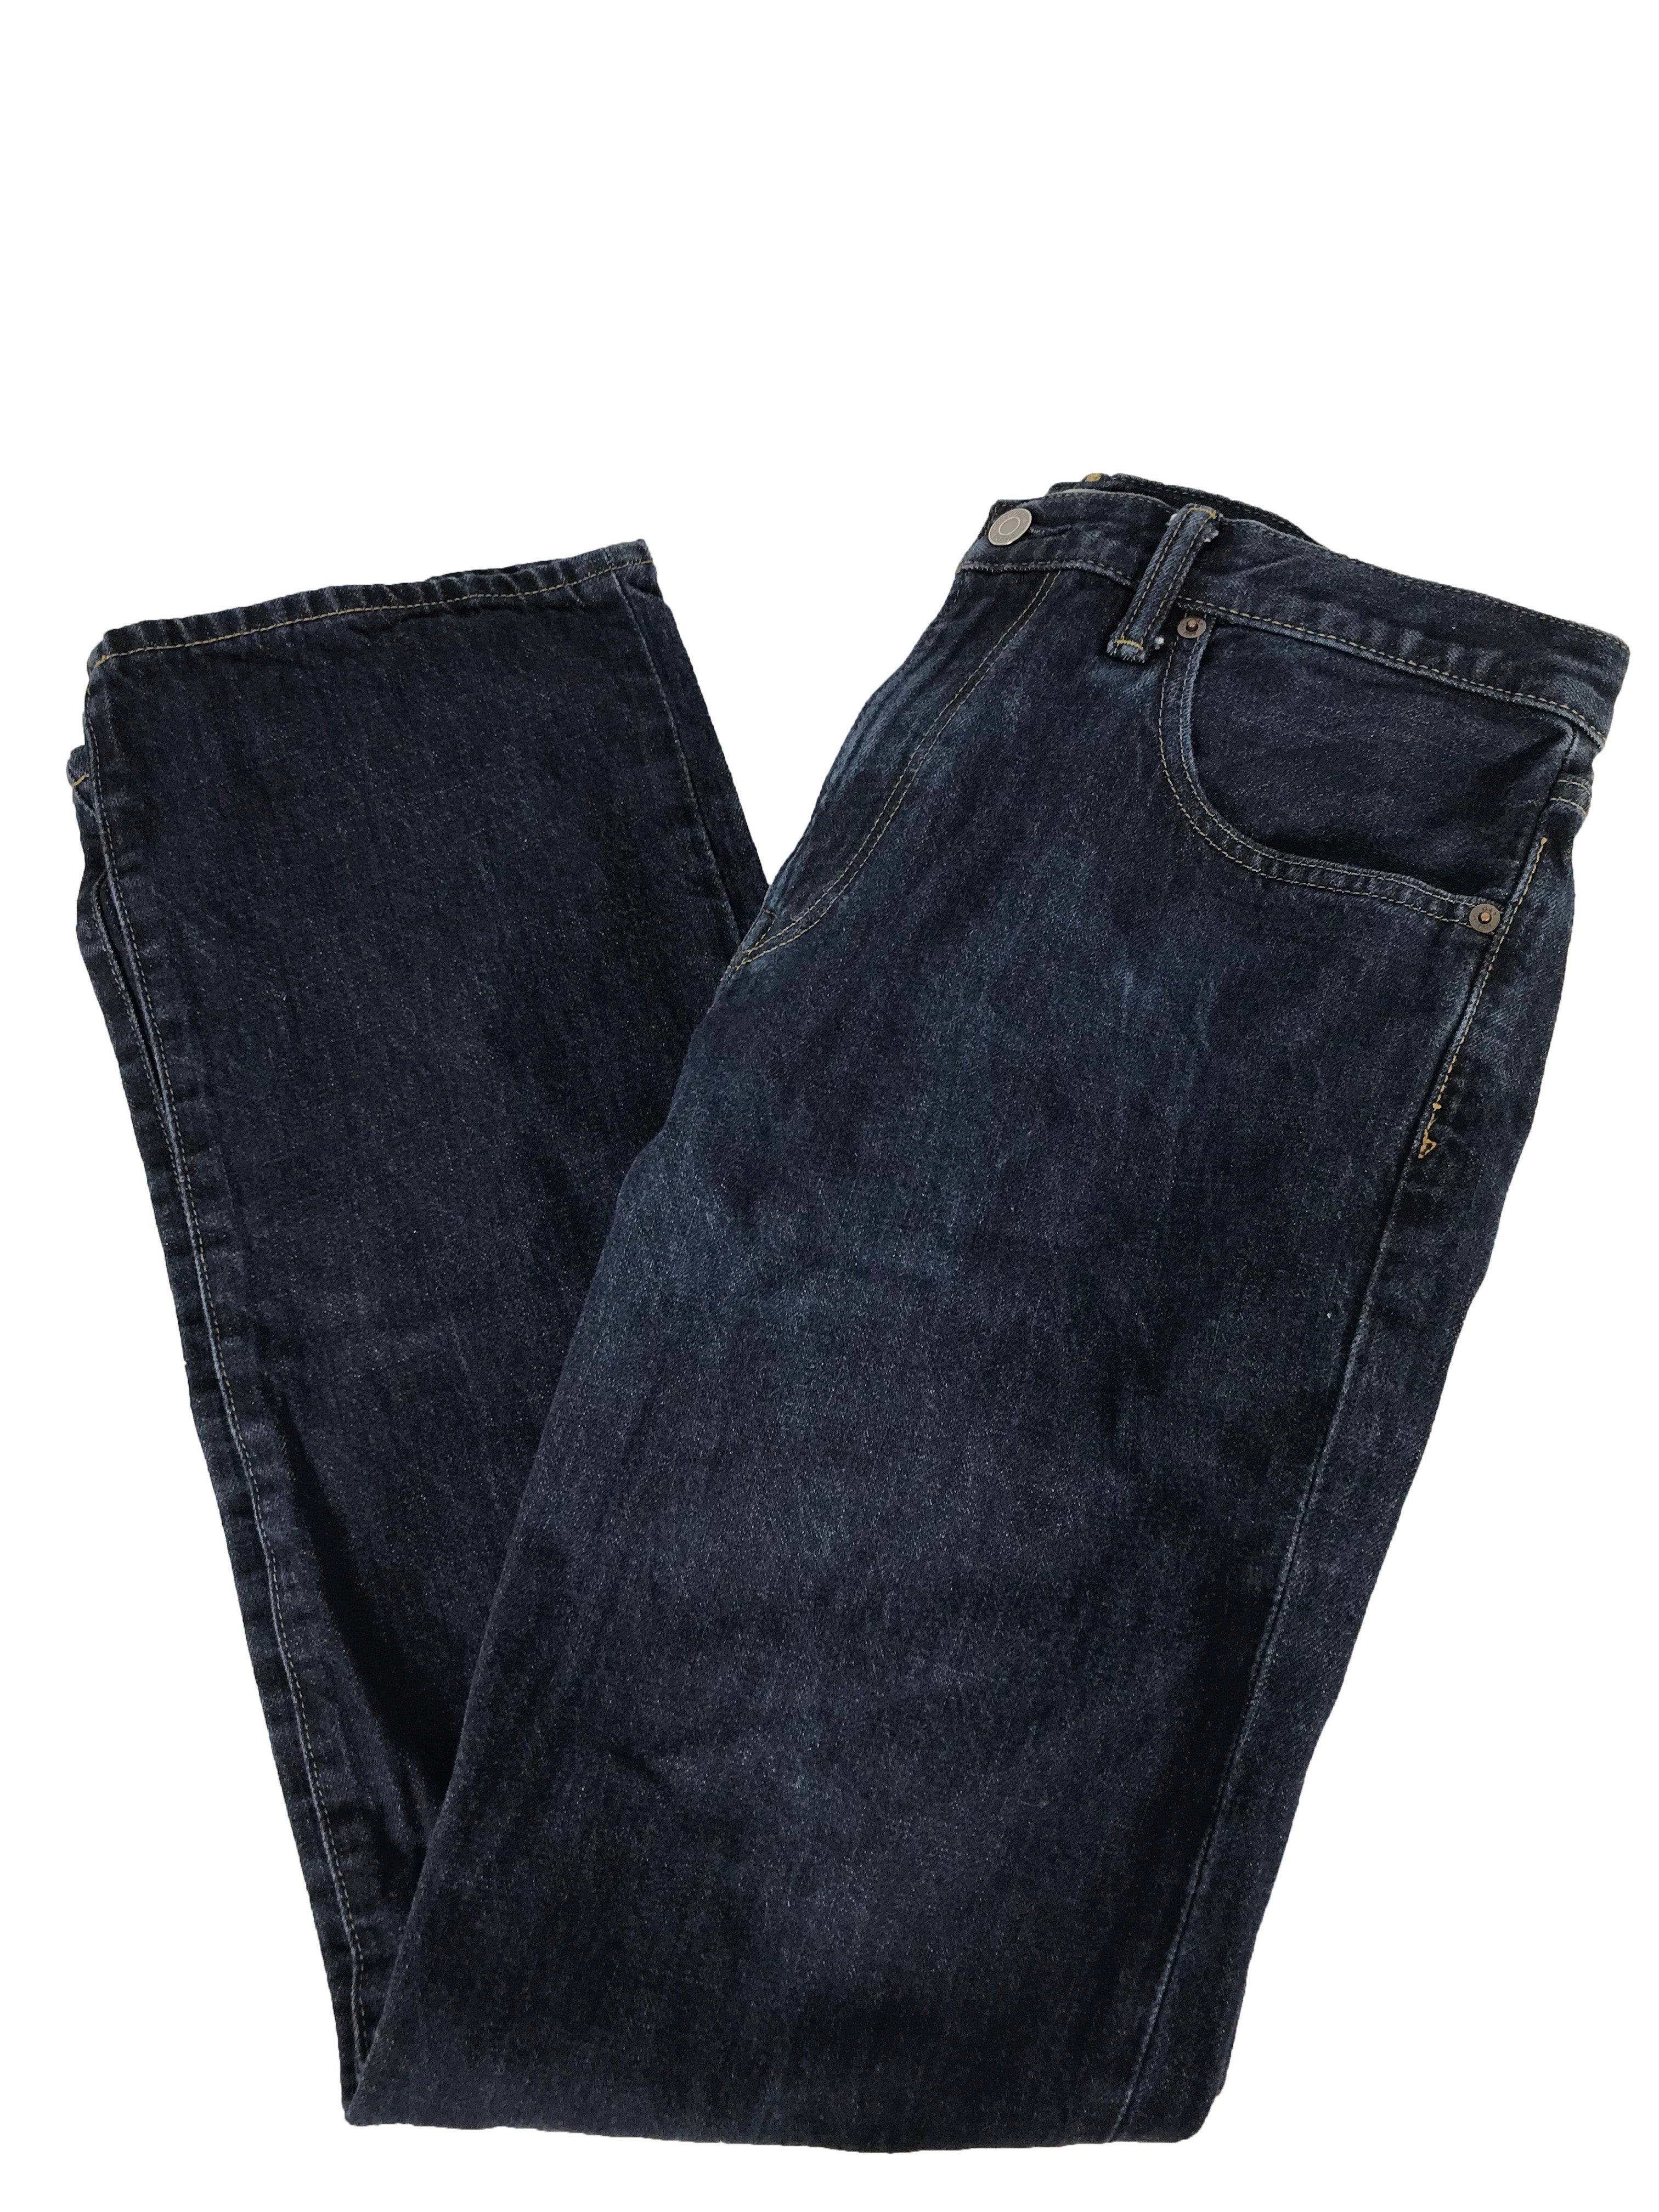 1969 Jeans Men's Size MSU Surplus